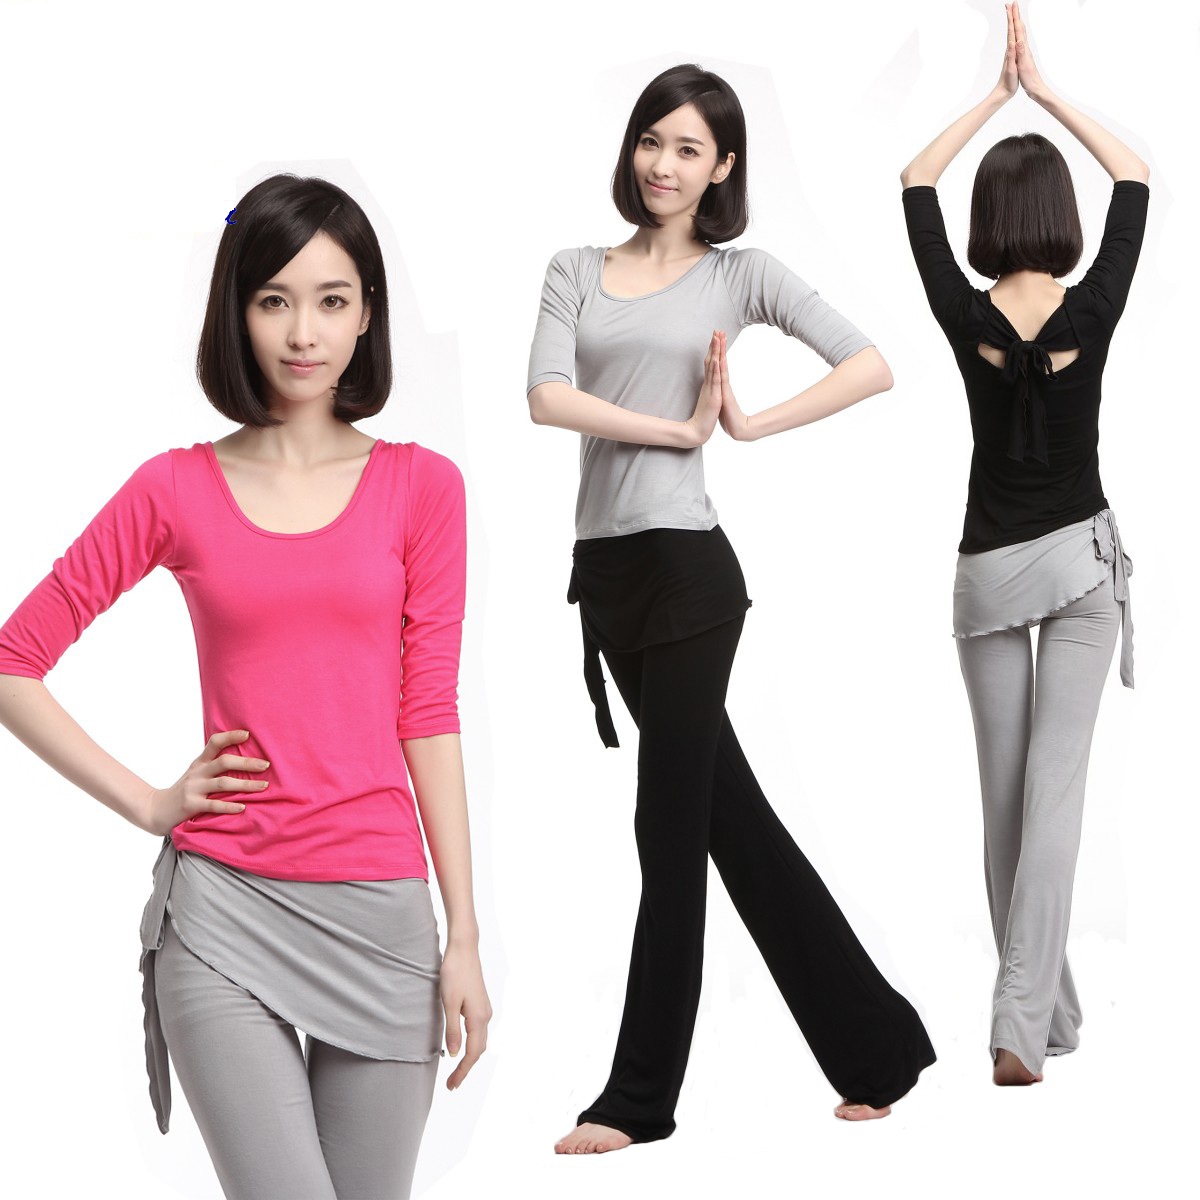 瑜伽服 套装 新款舞蹈服三件套 韩版健身服女 正品瑜珈服 跳操服